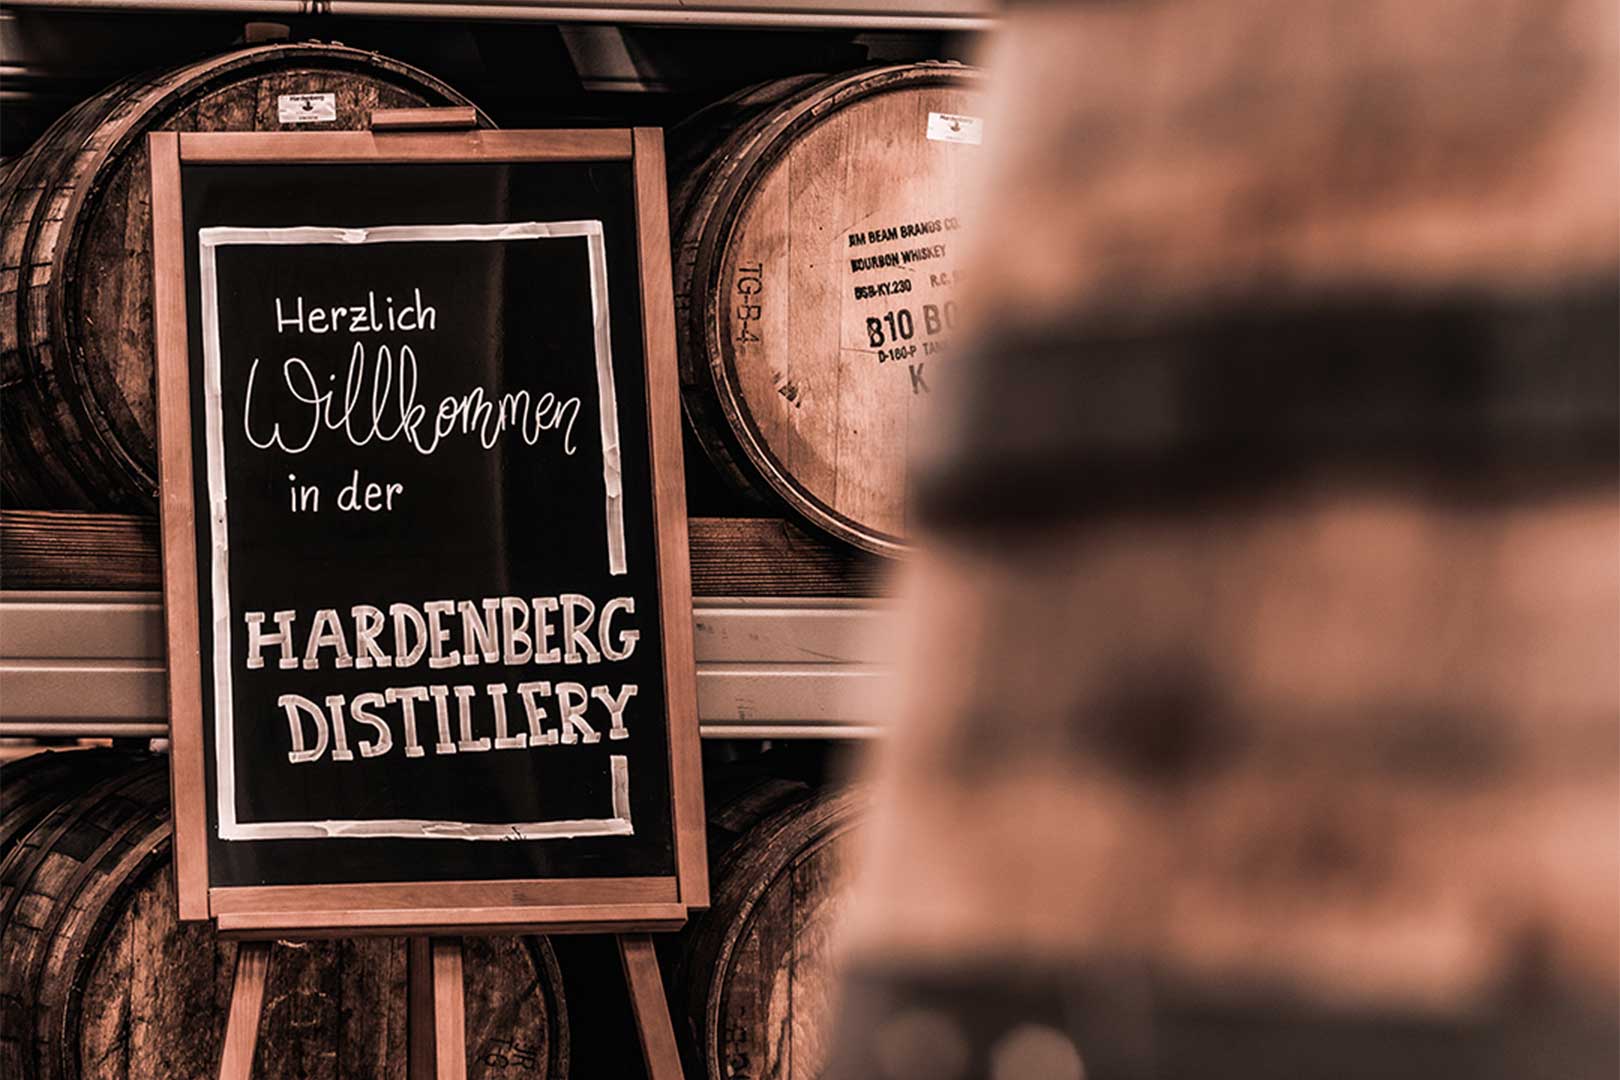 whisky brennerei hardenberg distillery noerten hardenberg WEB 3 2 1620x1080 nqcvcjex